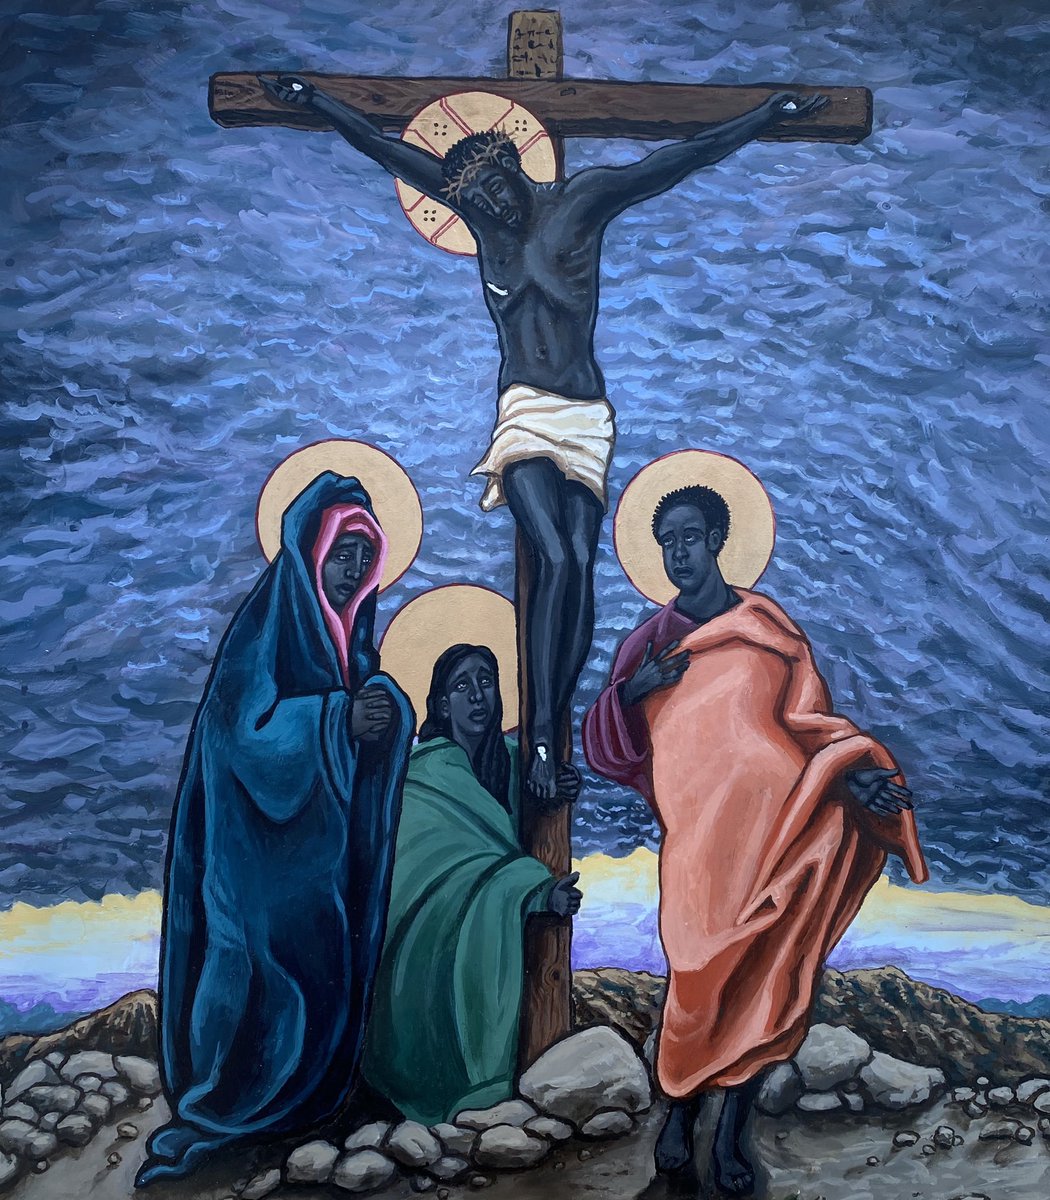 It’s Good Friday “The Crucifixion” kellylatimoreicons.com